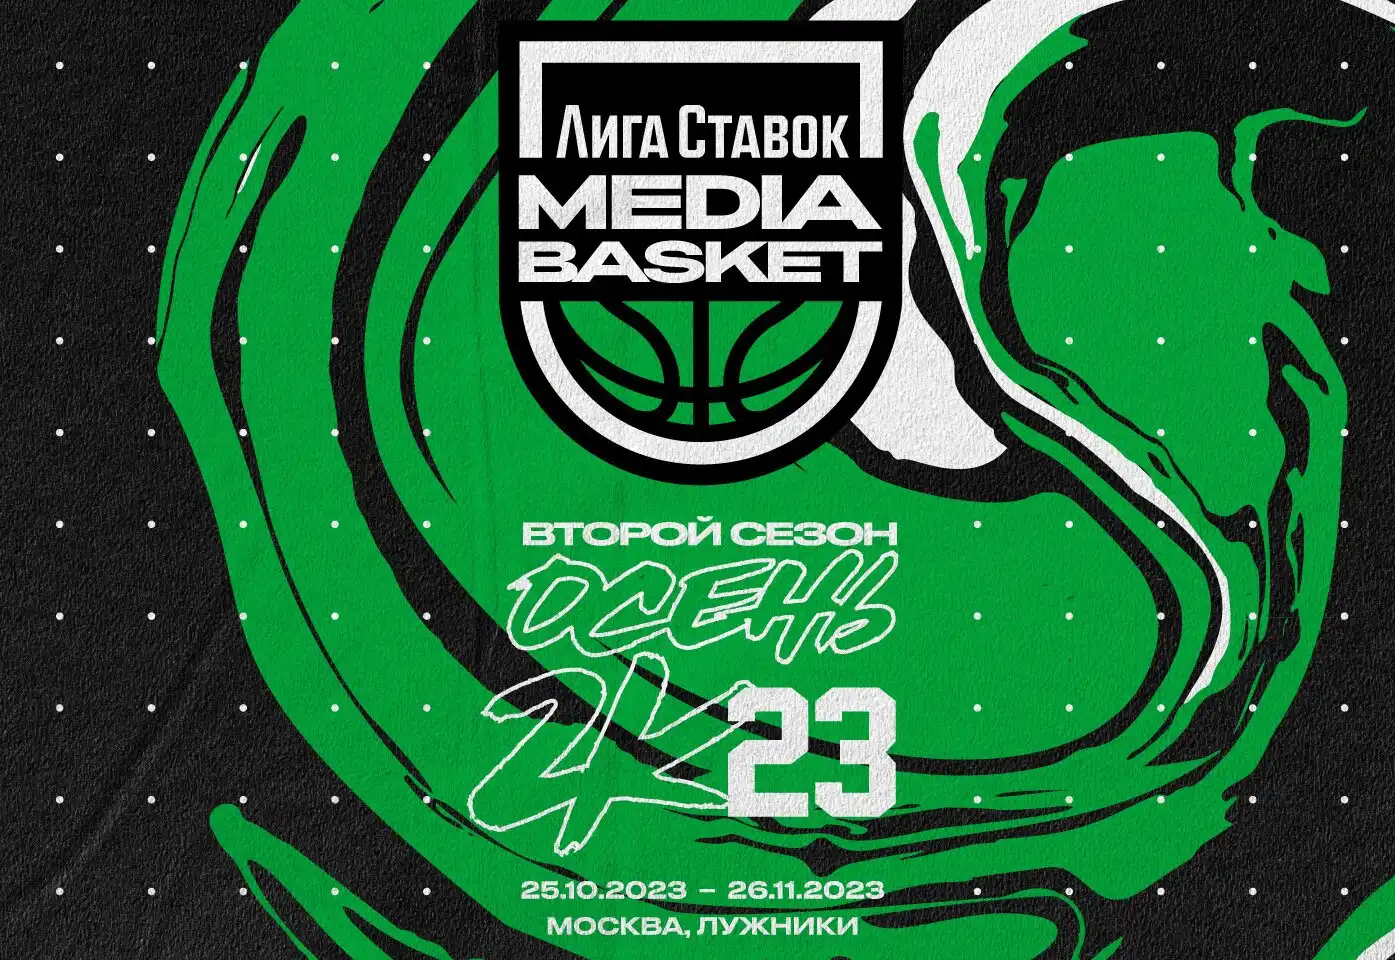 Лига Ставок Media Basket: стартует второй сезон первой в России медийной баскетбольной лиги